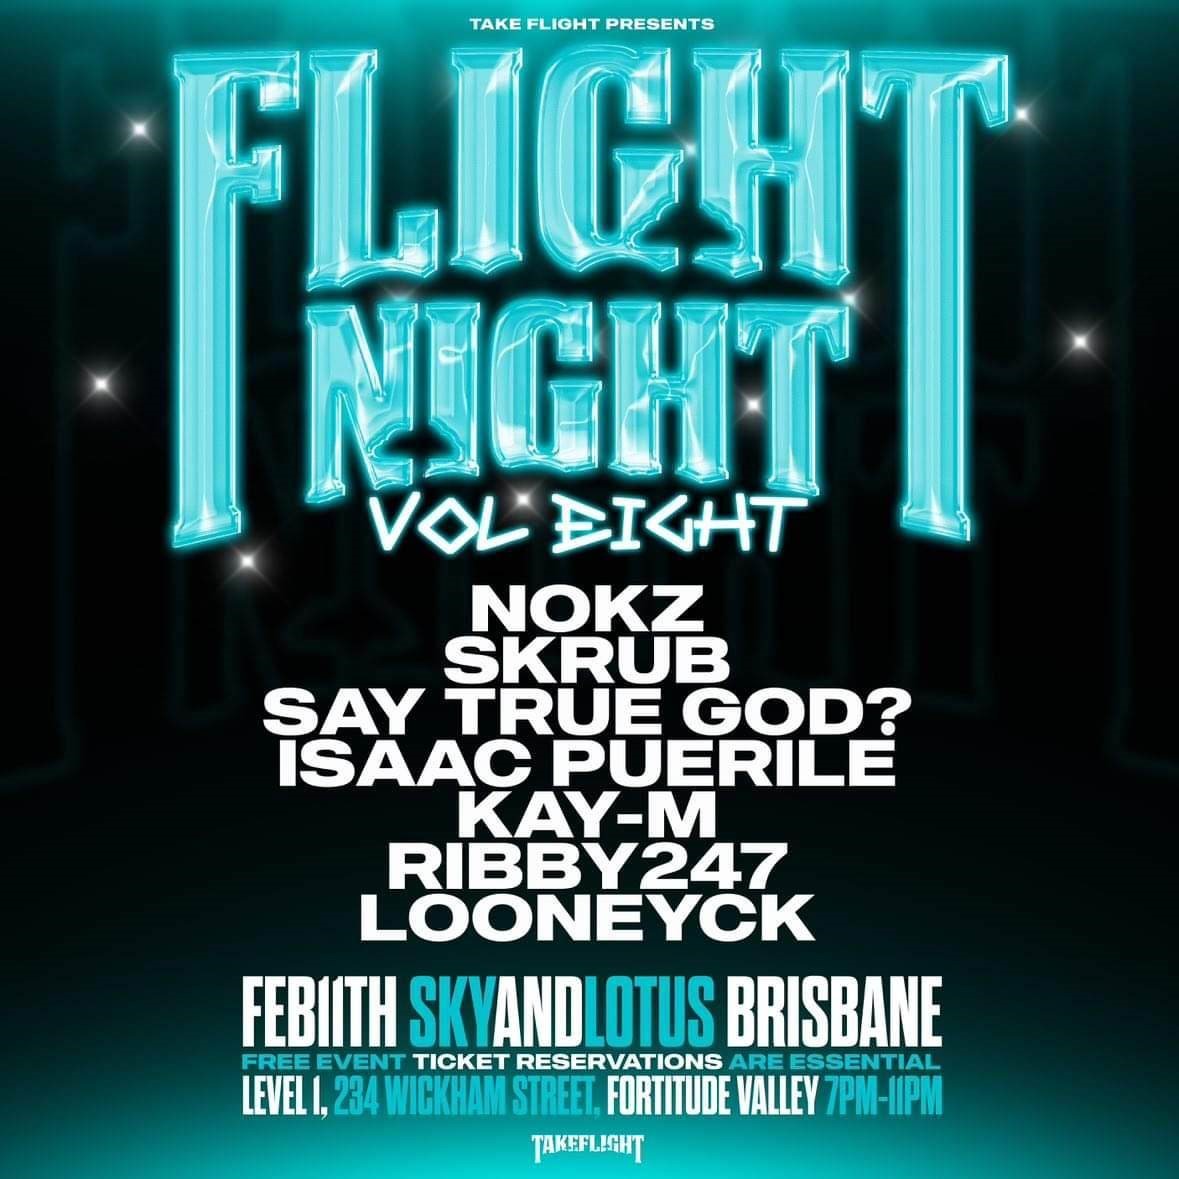 Take Flights Presents - Flight Night Brisbane  on feb. 11, 19:00@Sky And Lotus - Compra entradas y obtén información enGOLDBARBNE 